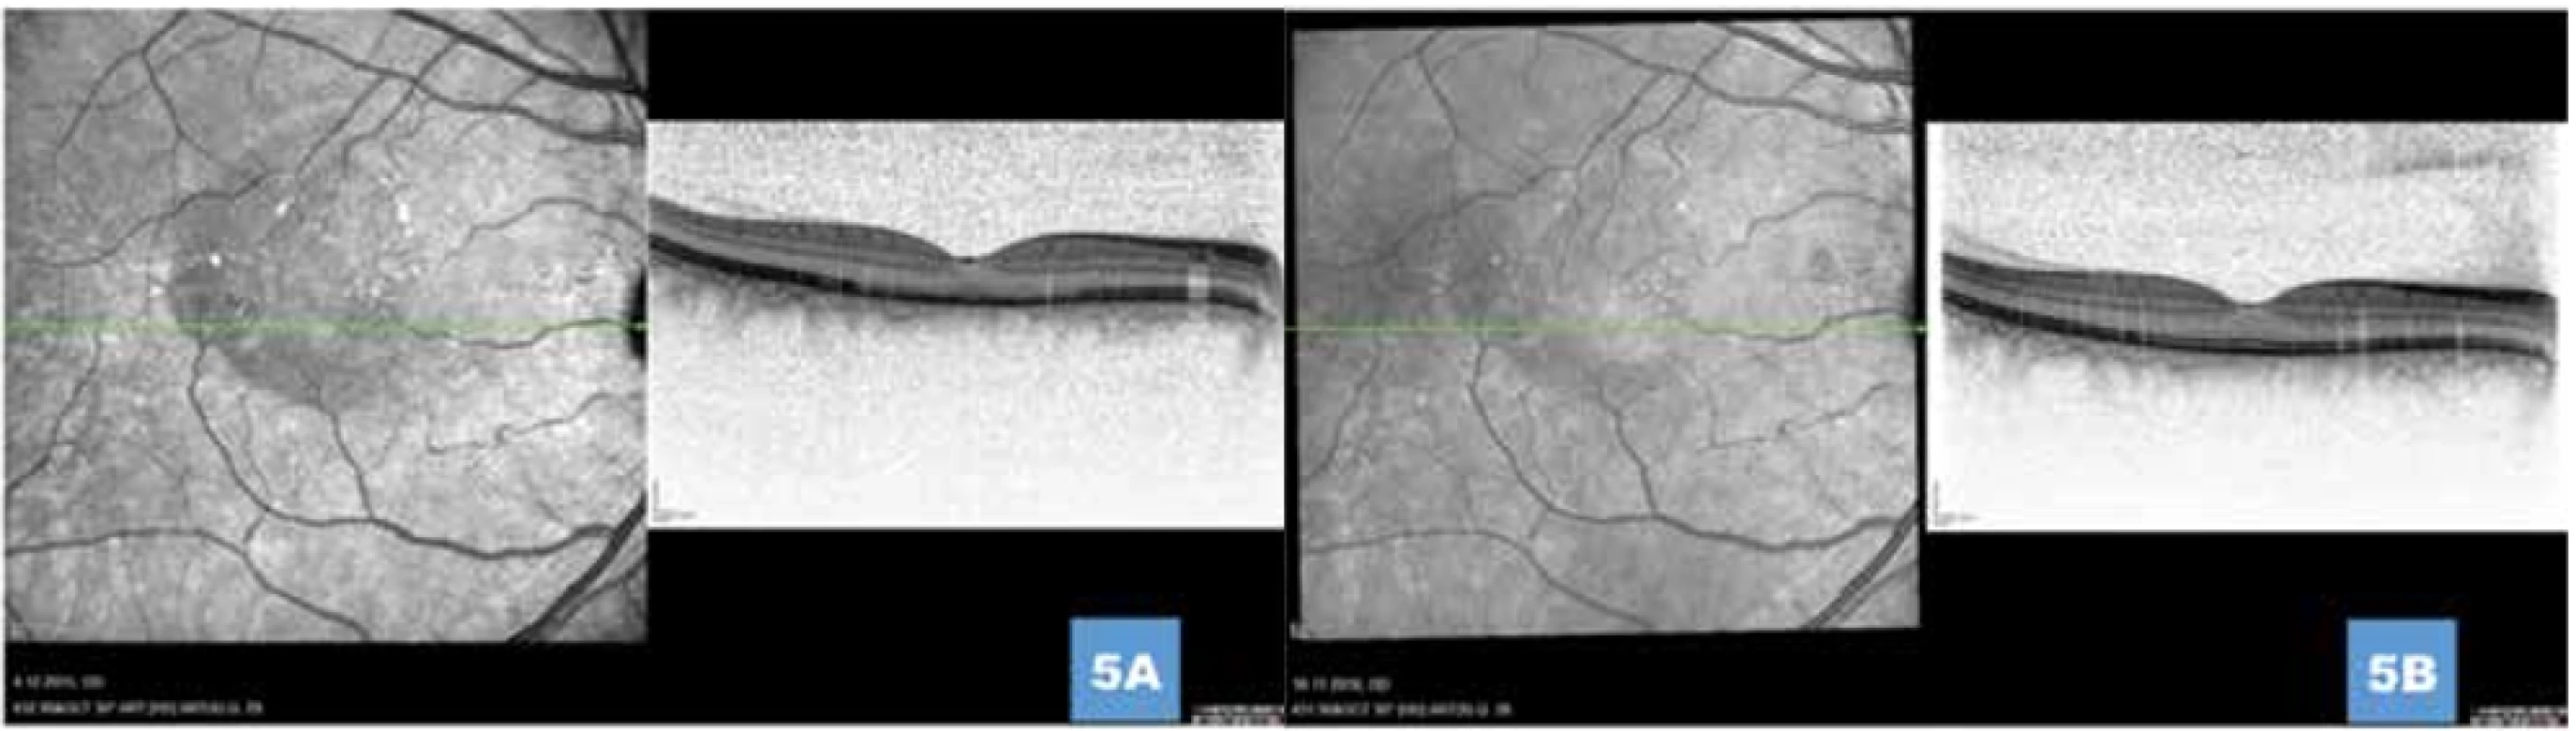 (A) Ústup aktivity onemocnění s postupnou normalizací retinálních vrstev 1 měsíc, respektive (B) 1 rok po provedení fotodynamické léčby